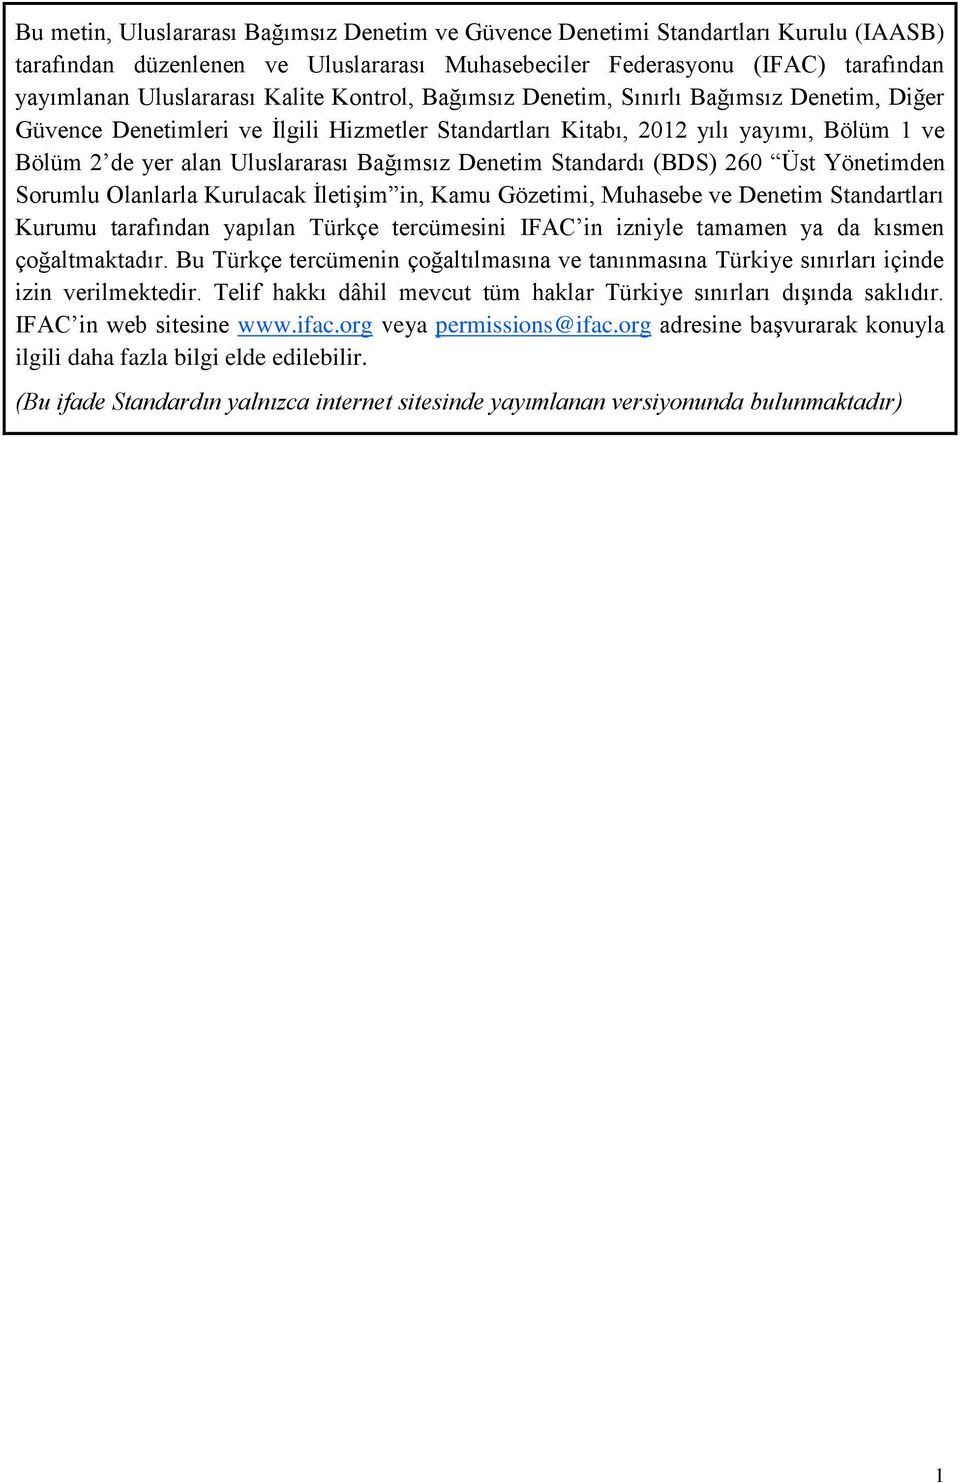 Denetim Standardı (BDS) 260 Üst Yönetimden Sorumlu Olanlarla Kurulacak İletişim in, Kamu Gözetimi, Muhasebe ve Denetim Standartları Kurumu tarafından yapılan Türkçe tercümesini IFAC in izniyle